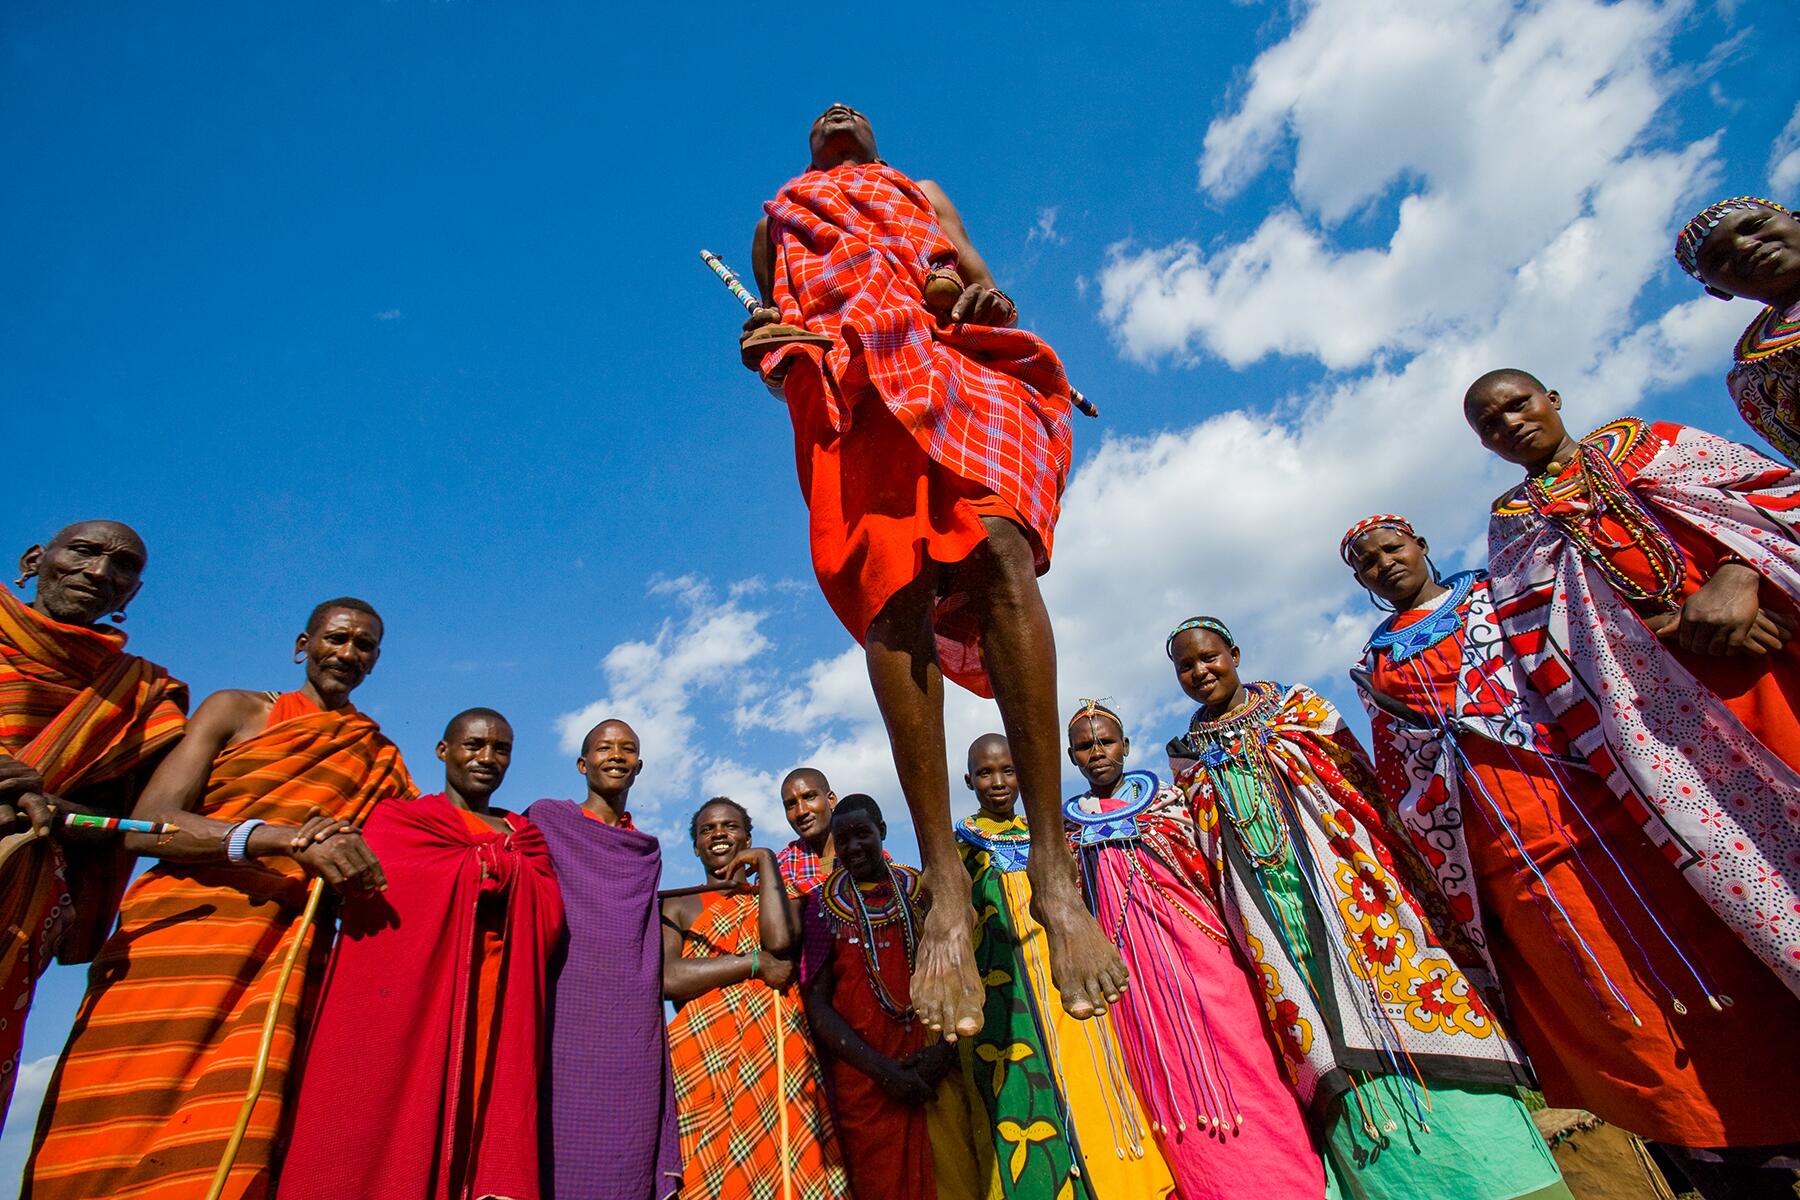 <a href='https://www.fodors.com/go-list/2020/africa-middle-east#masai-mara'>Fodor’s Go List 2020: Masai Mara, Kenya</a>